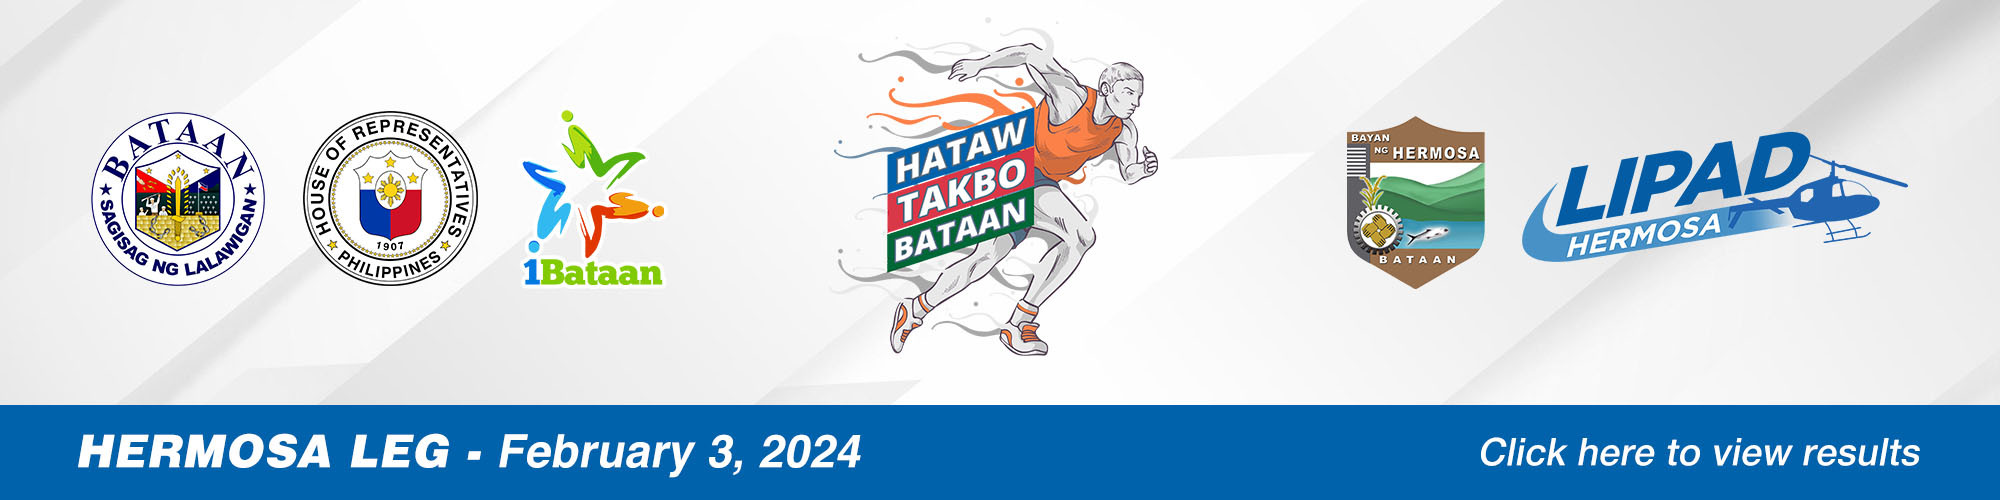 Hataw Takbo Bataan 2024